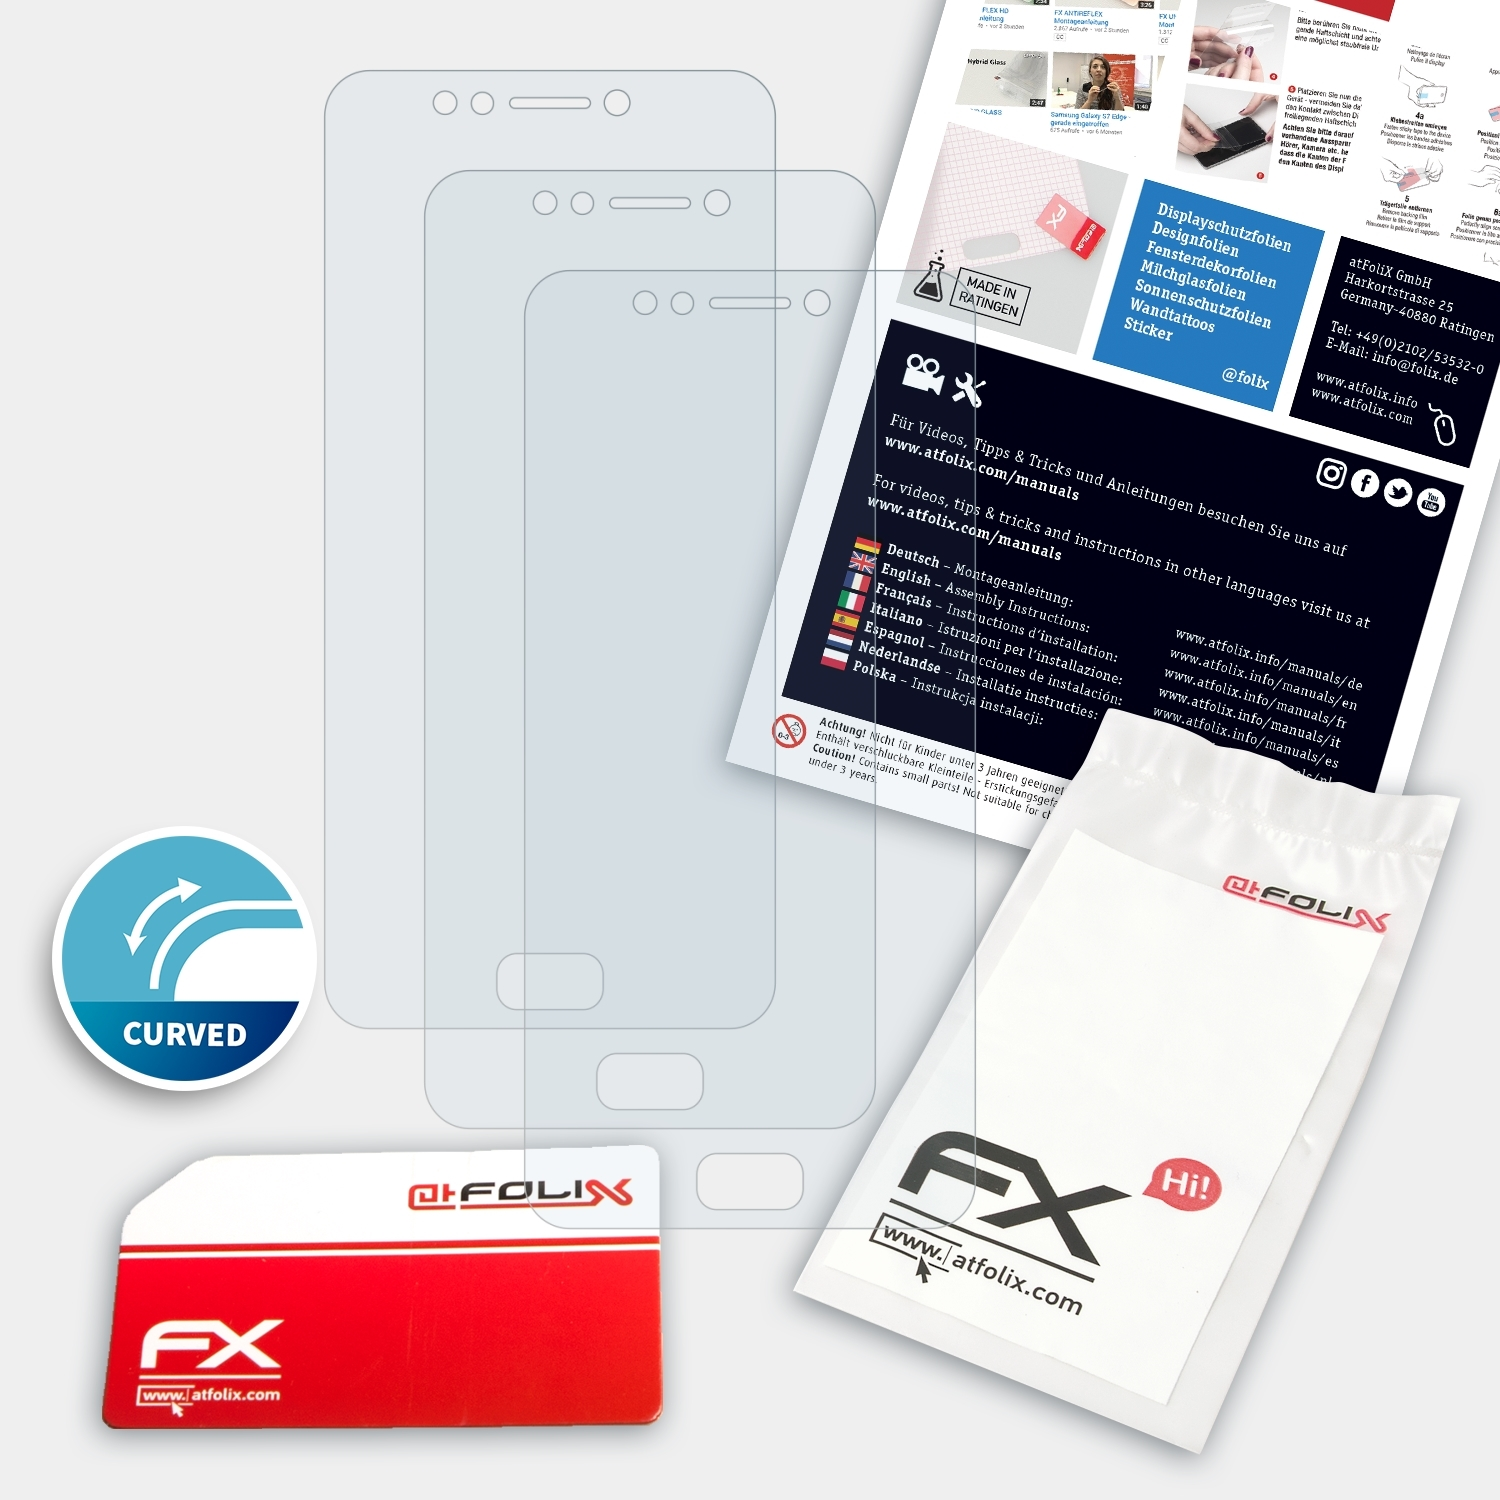 (ZC520KL)) FX-ActiFleX Displayschutz(für ATFOLIX 3x Asus ZenFone 4 Max